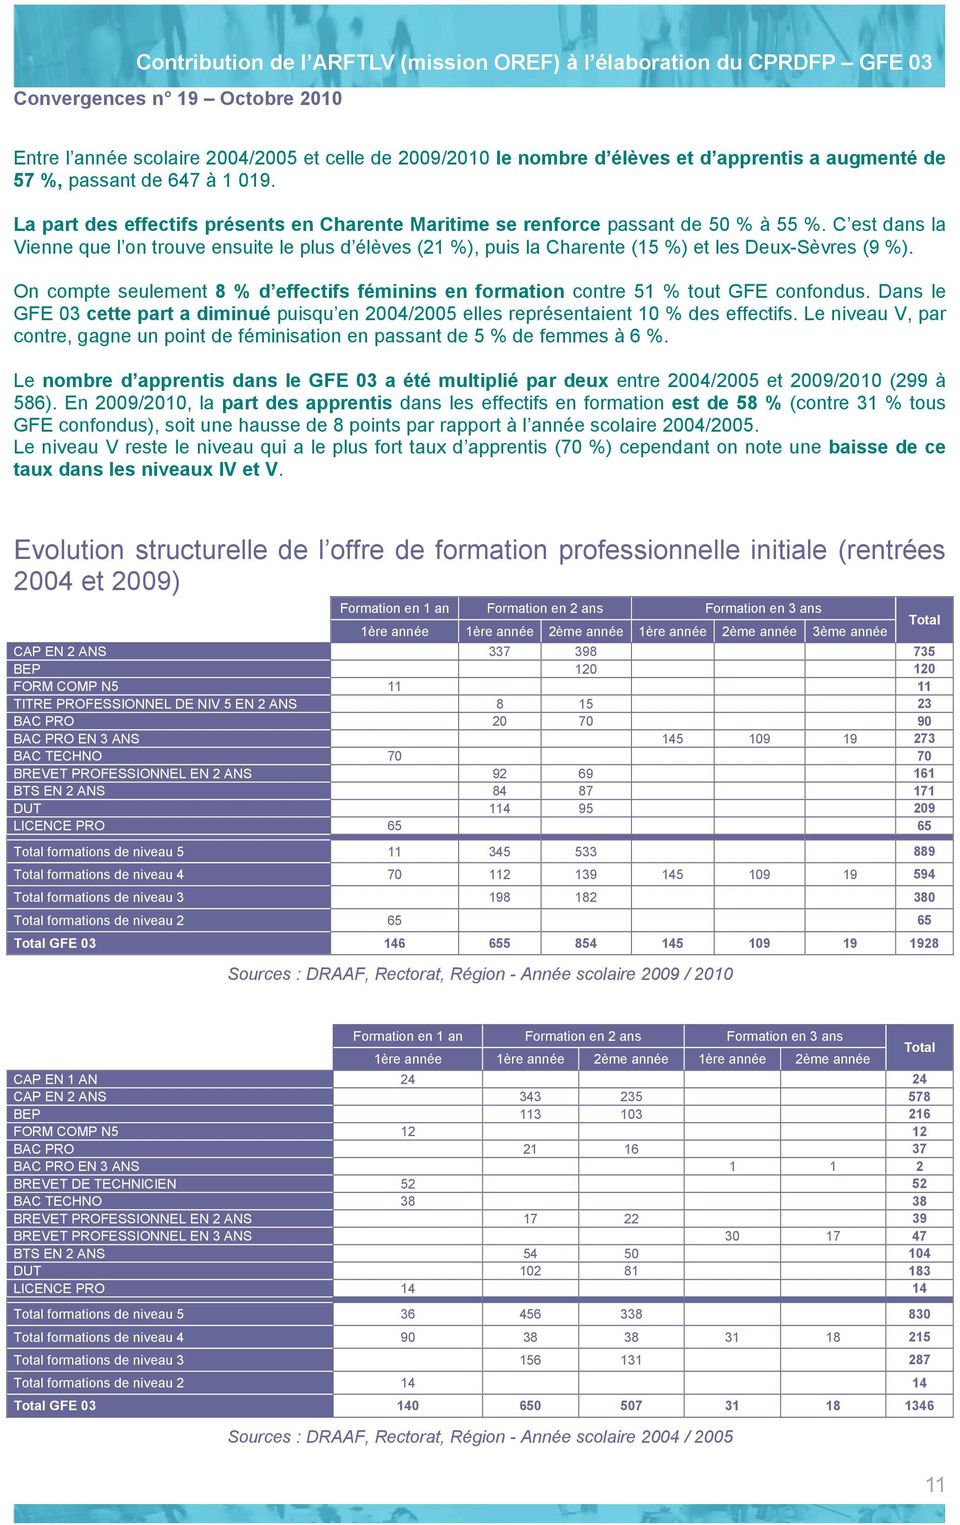 C est dans la Vienne que l on trouve ensuite le plus d élèves (21 %), puis la Charente (15 %) et les Deux-Sèvres (9 %).